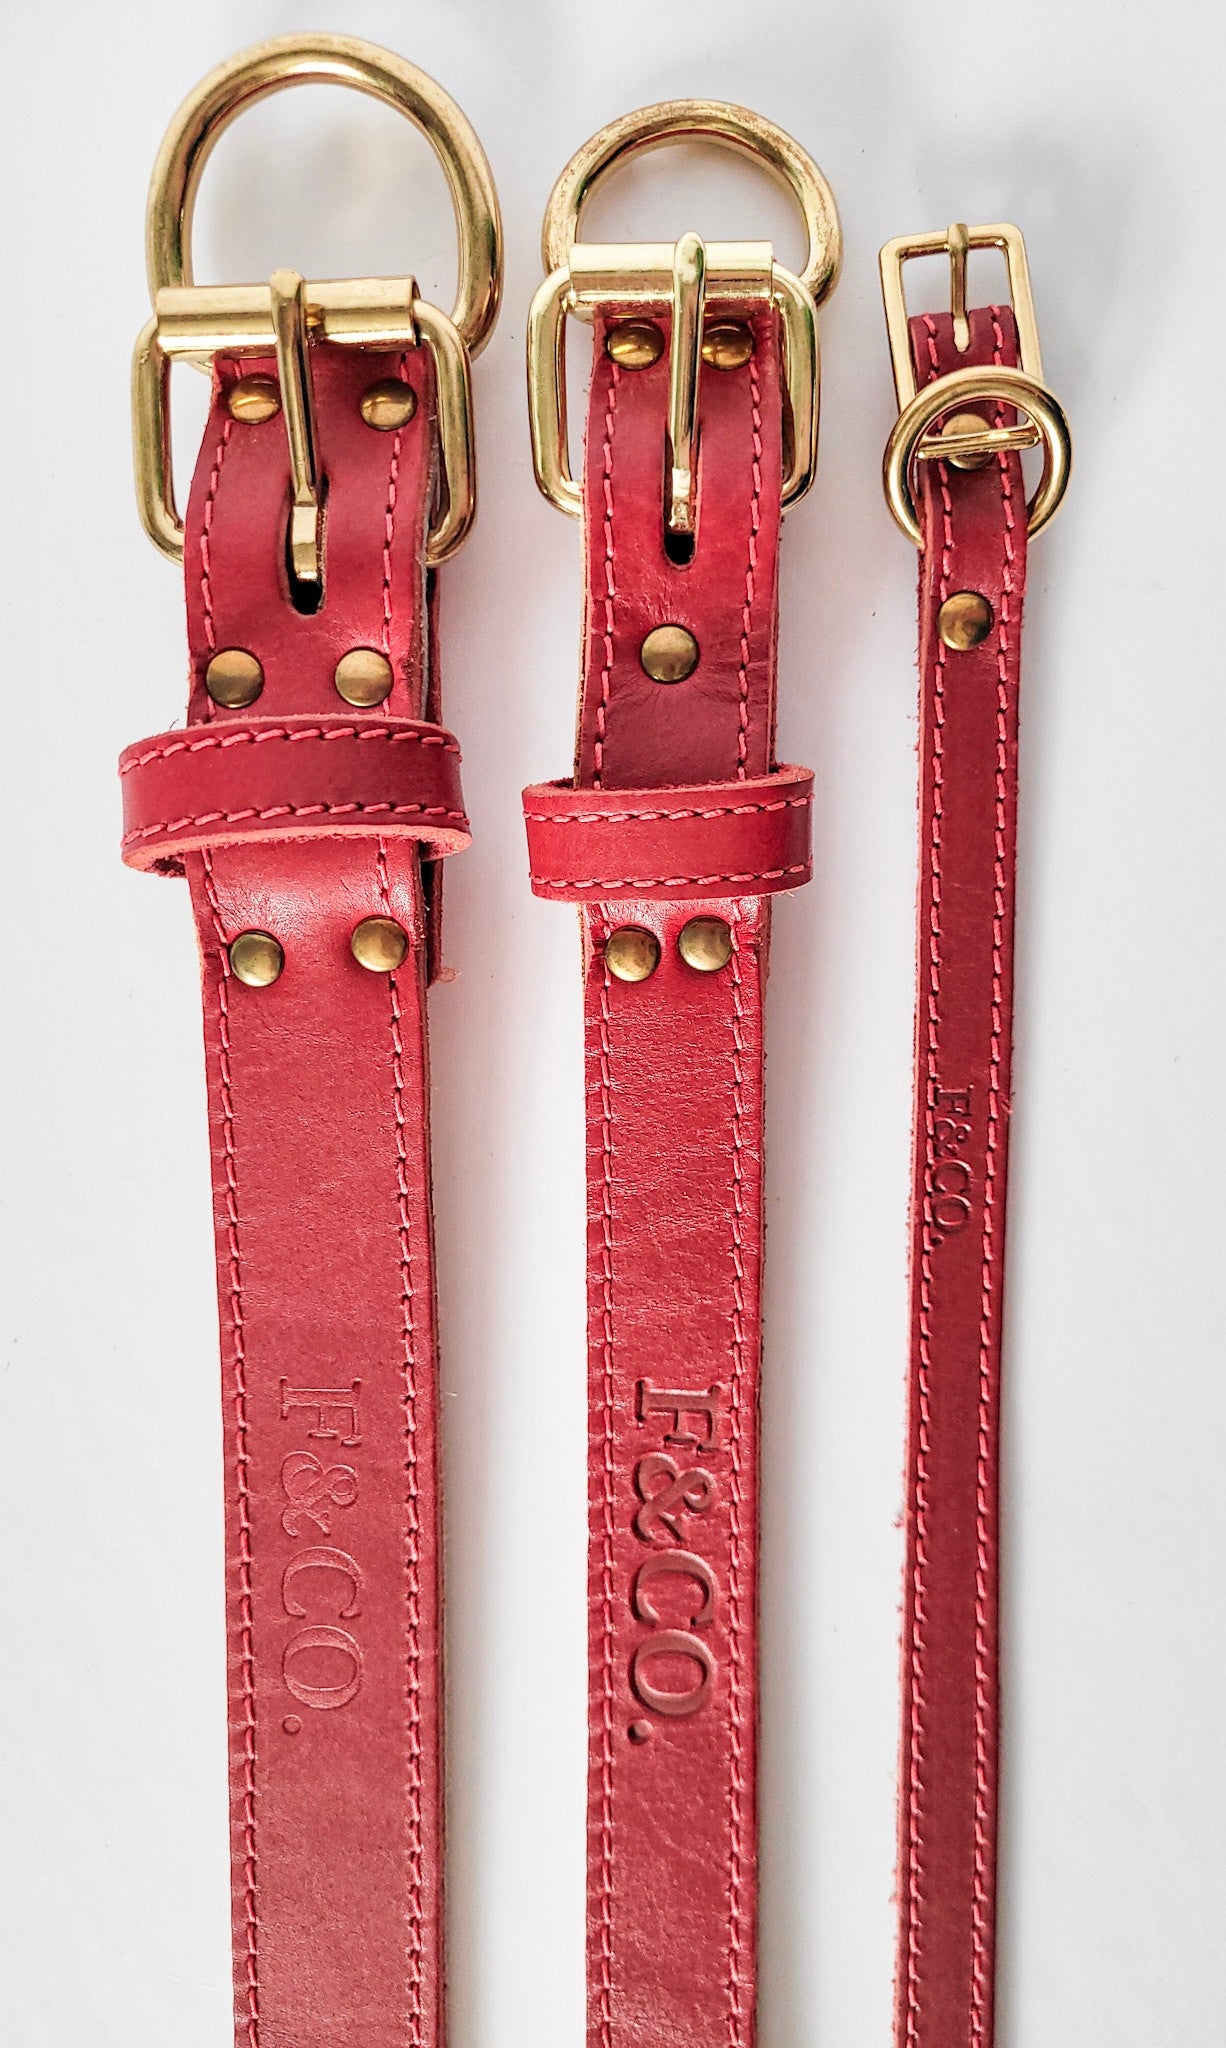 Différentes grandeur et largeur de colliers pour chien en cuir rouge. Attaches et boucles en laiton. Coutures rouges.